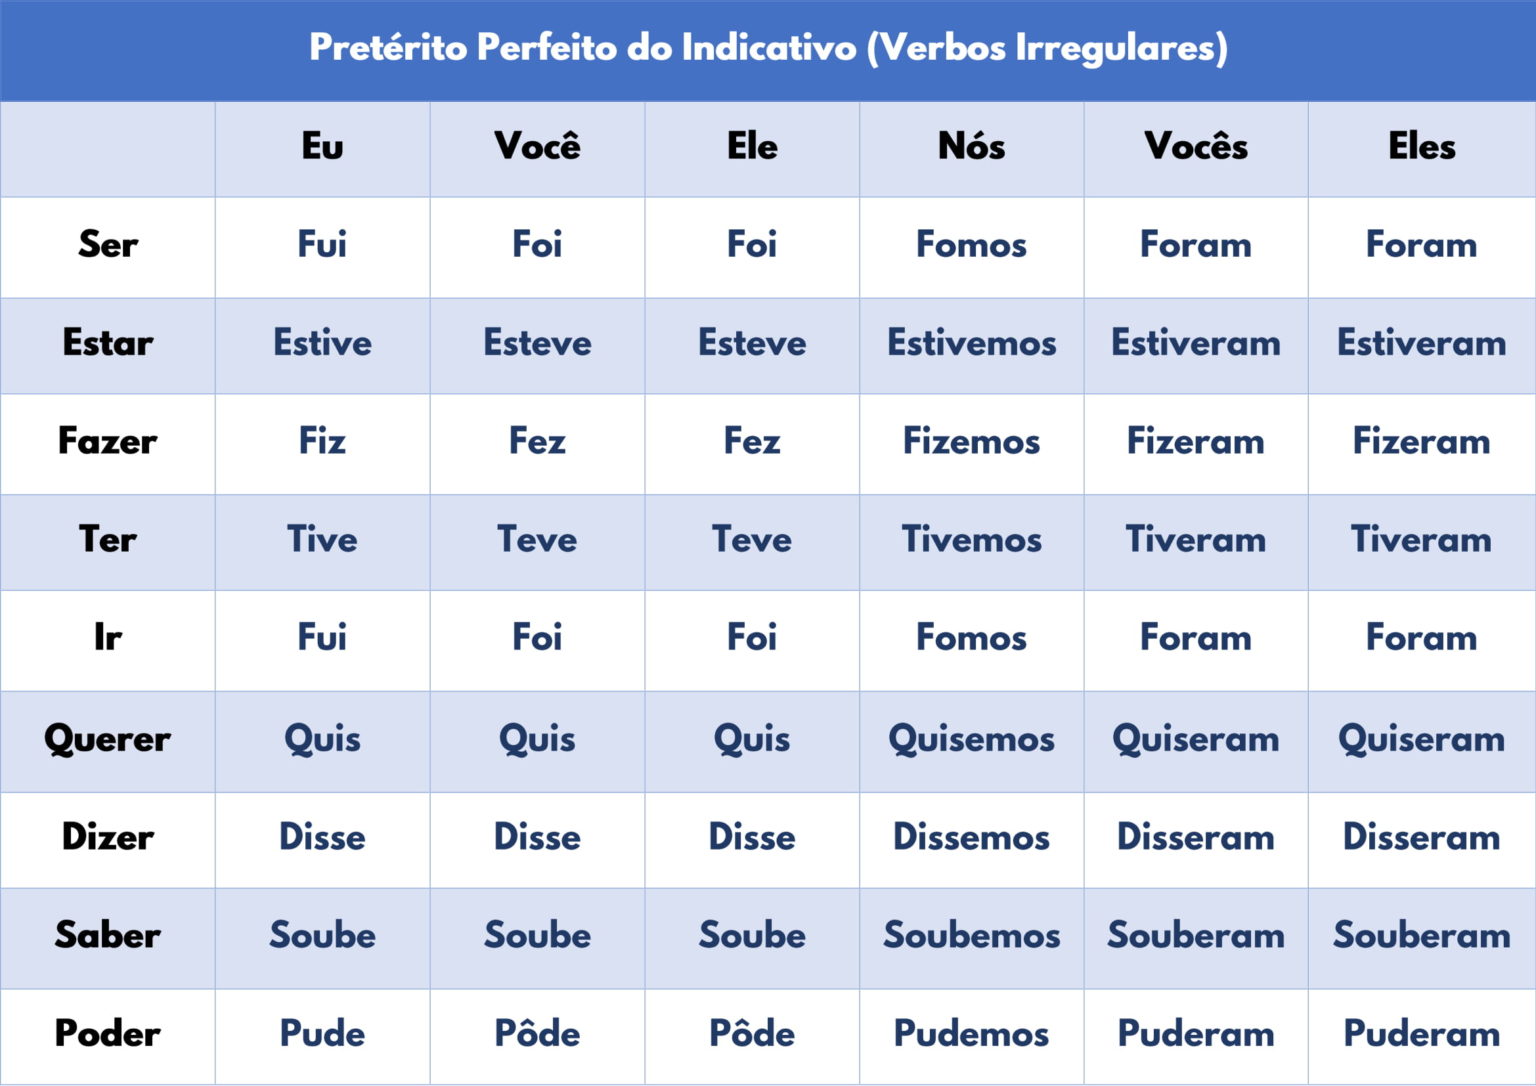 verbos-irregulares-vou-aprender-portugu-s